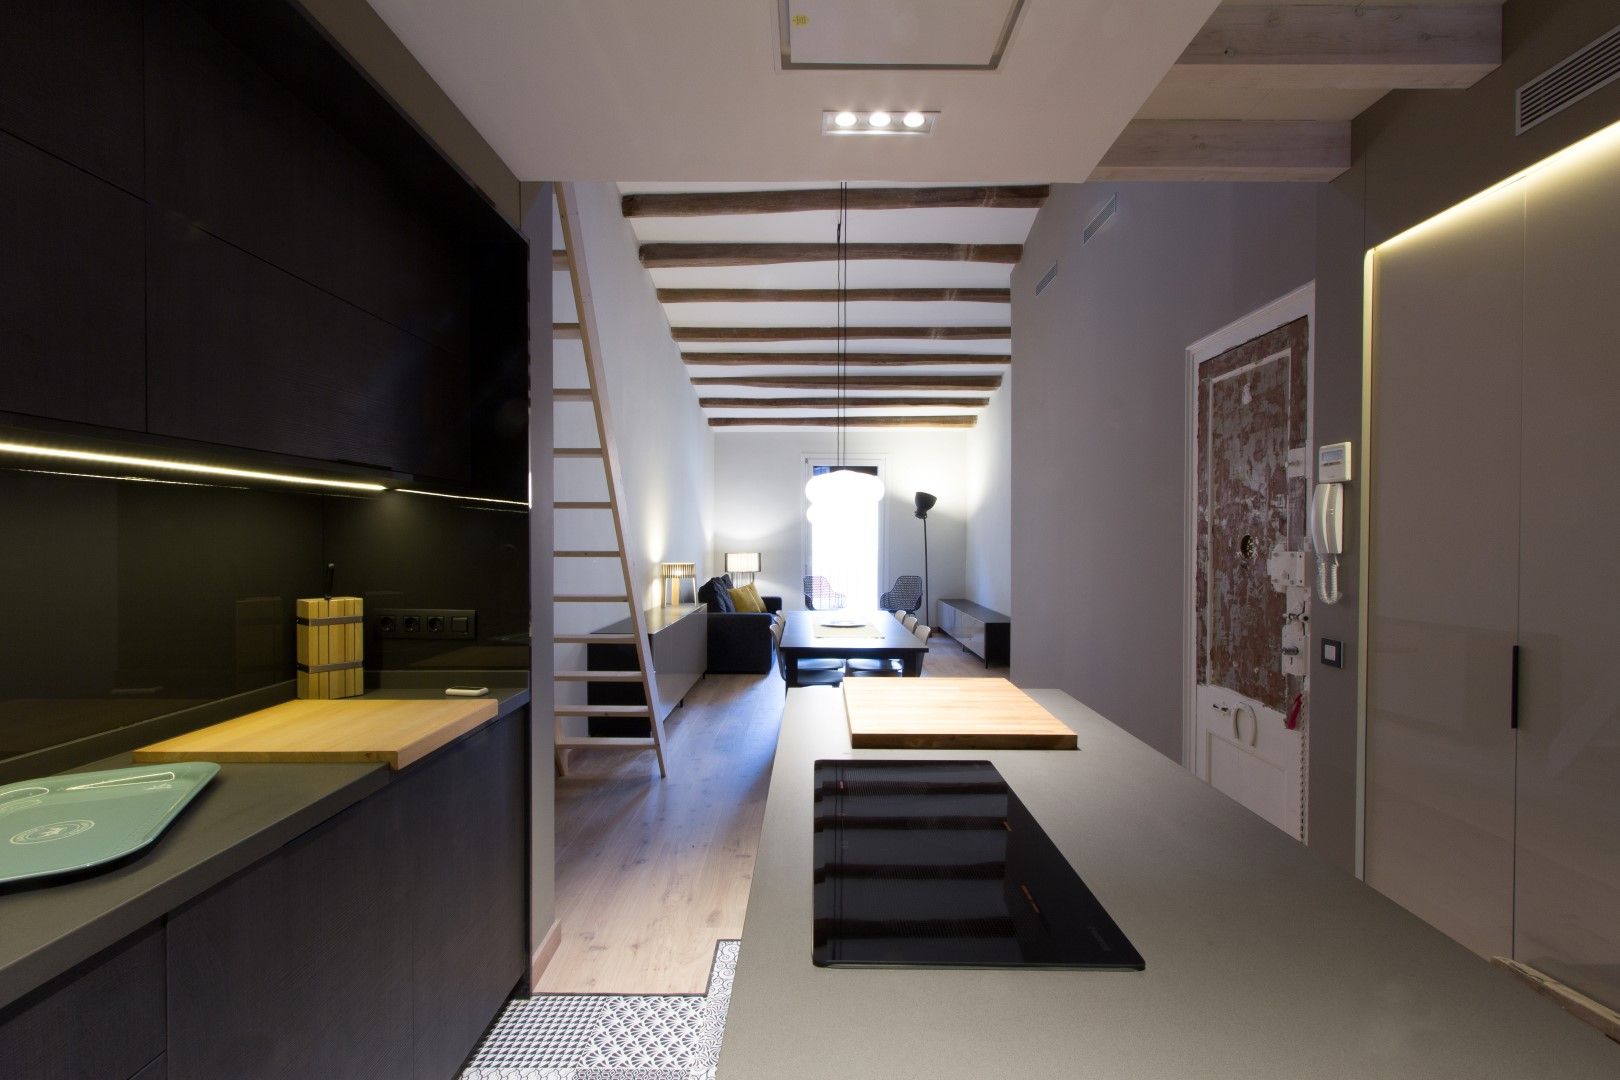 LOFT EN BARCELONA Proyecto de interiorismo para convertir un antiguo piso en un loft donde se valora la calidad del espacio, CREAPROJECTS. Interior design. CREAPROJECTS. Interior design. Cozinhas embutidas